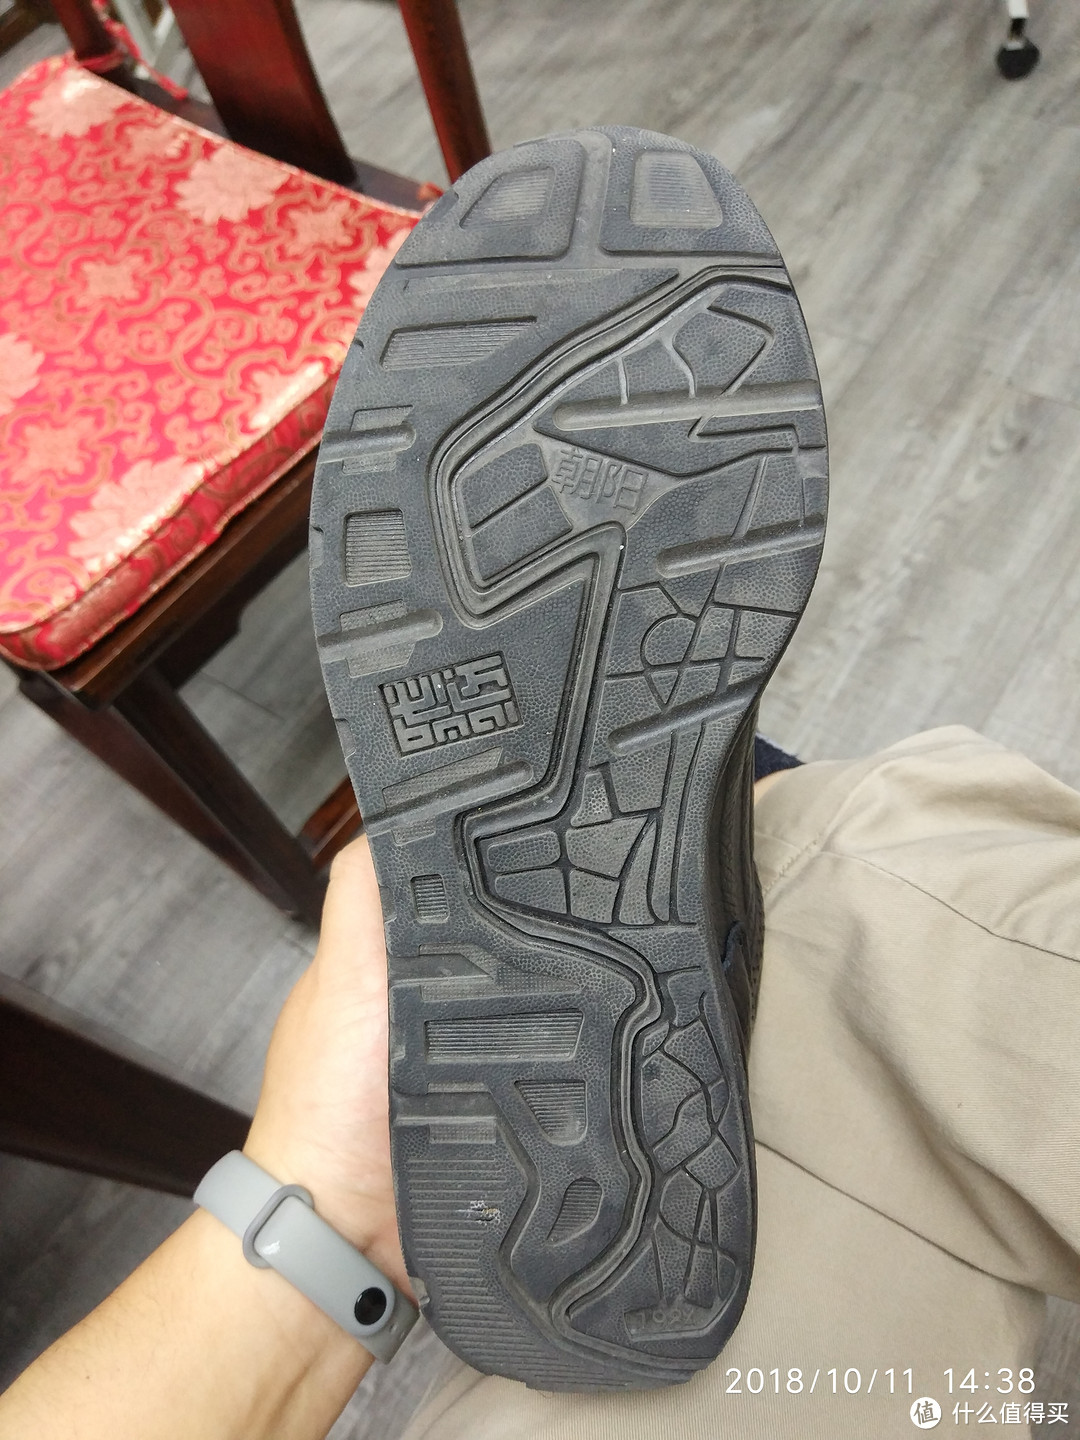 这个鞋底的花纹和京东上的不一样。看图对比下。